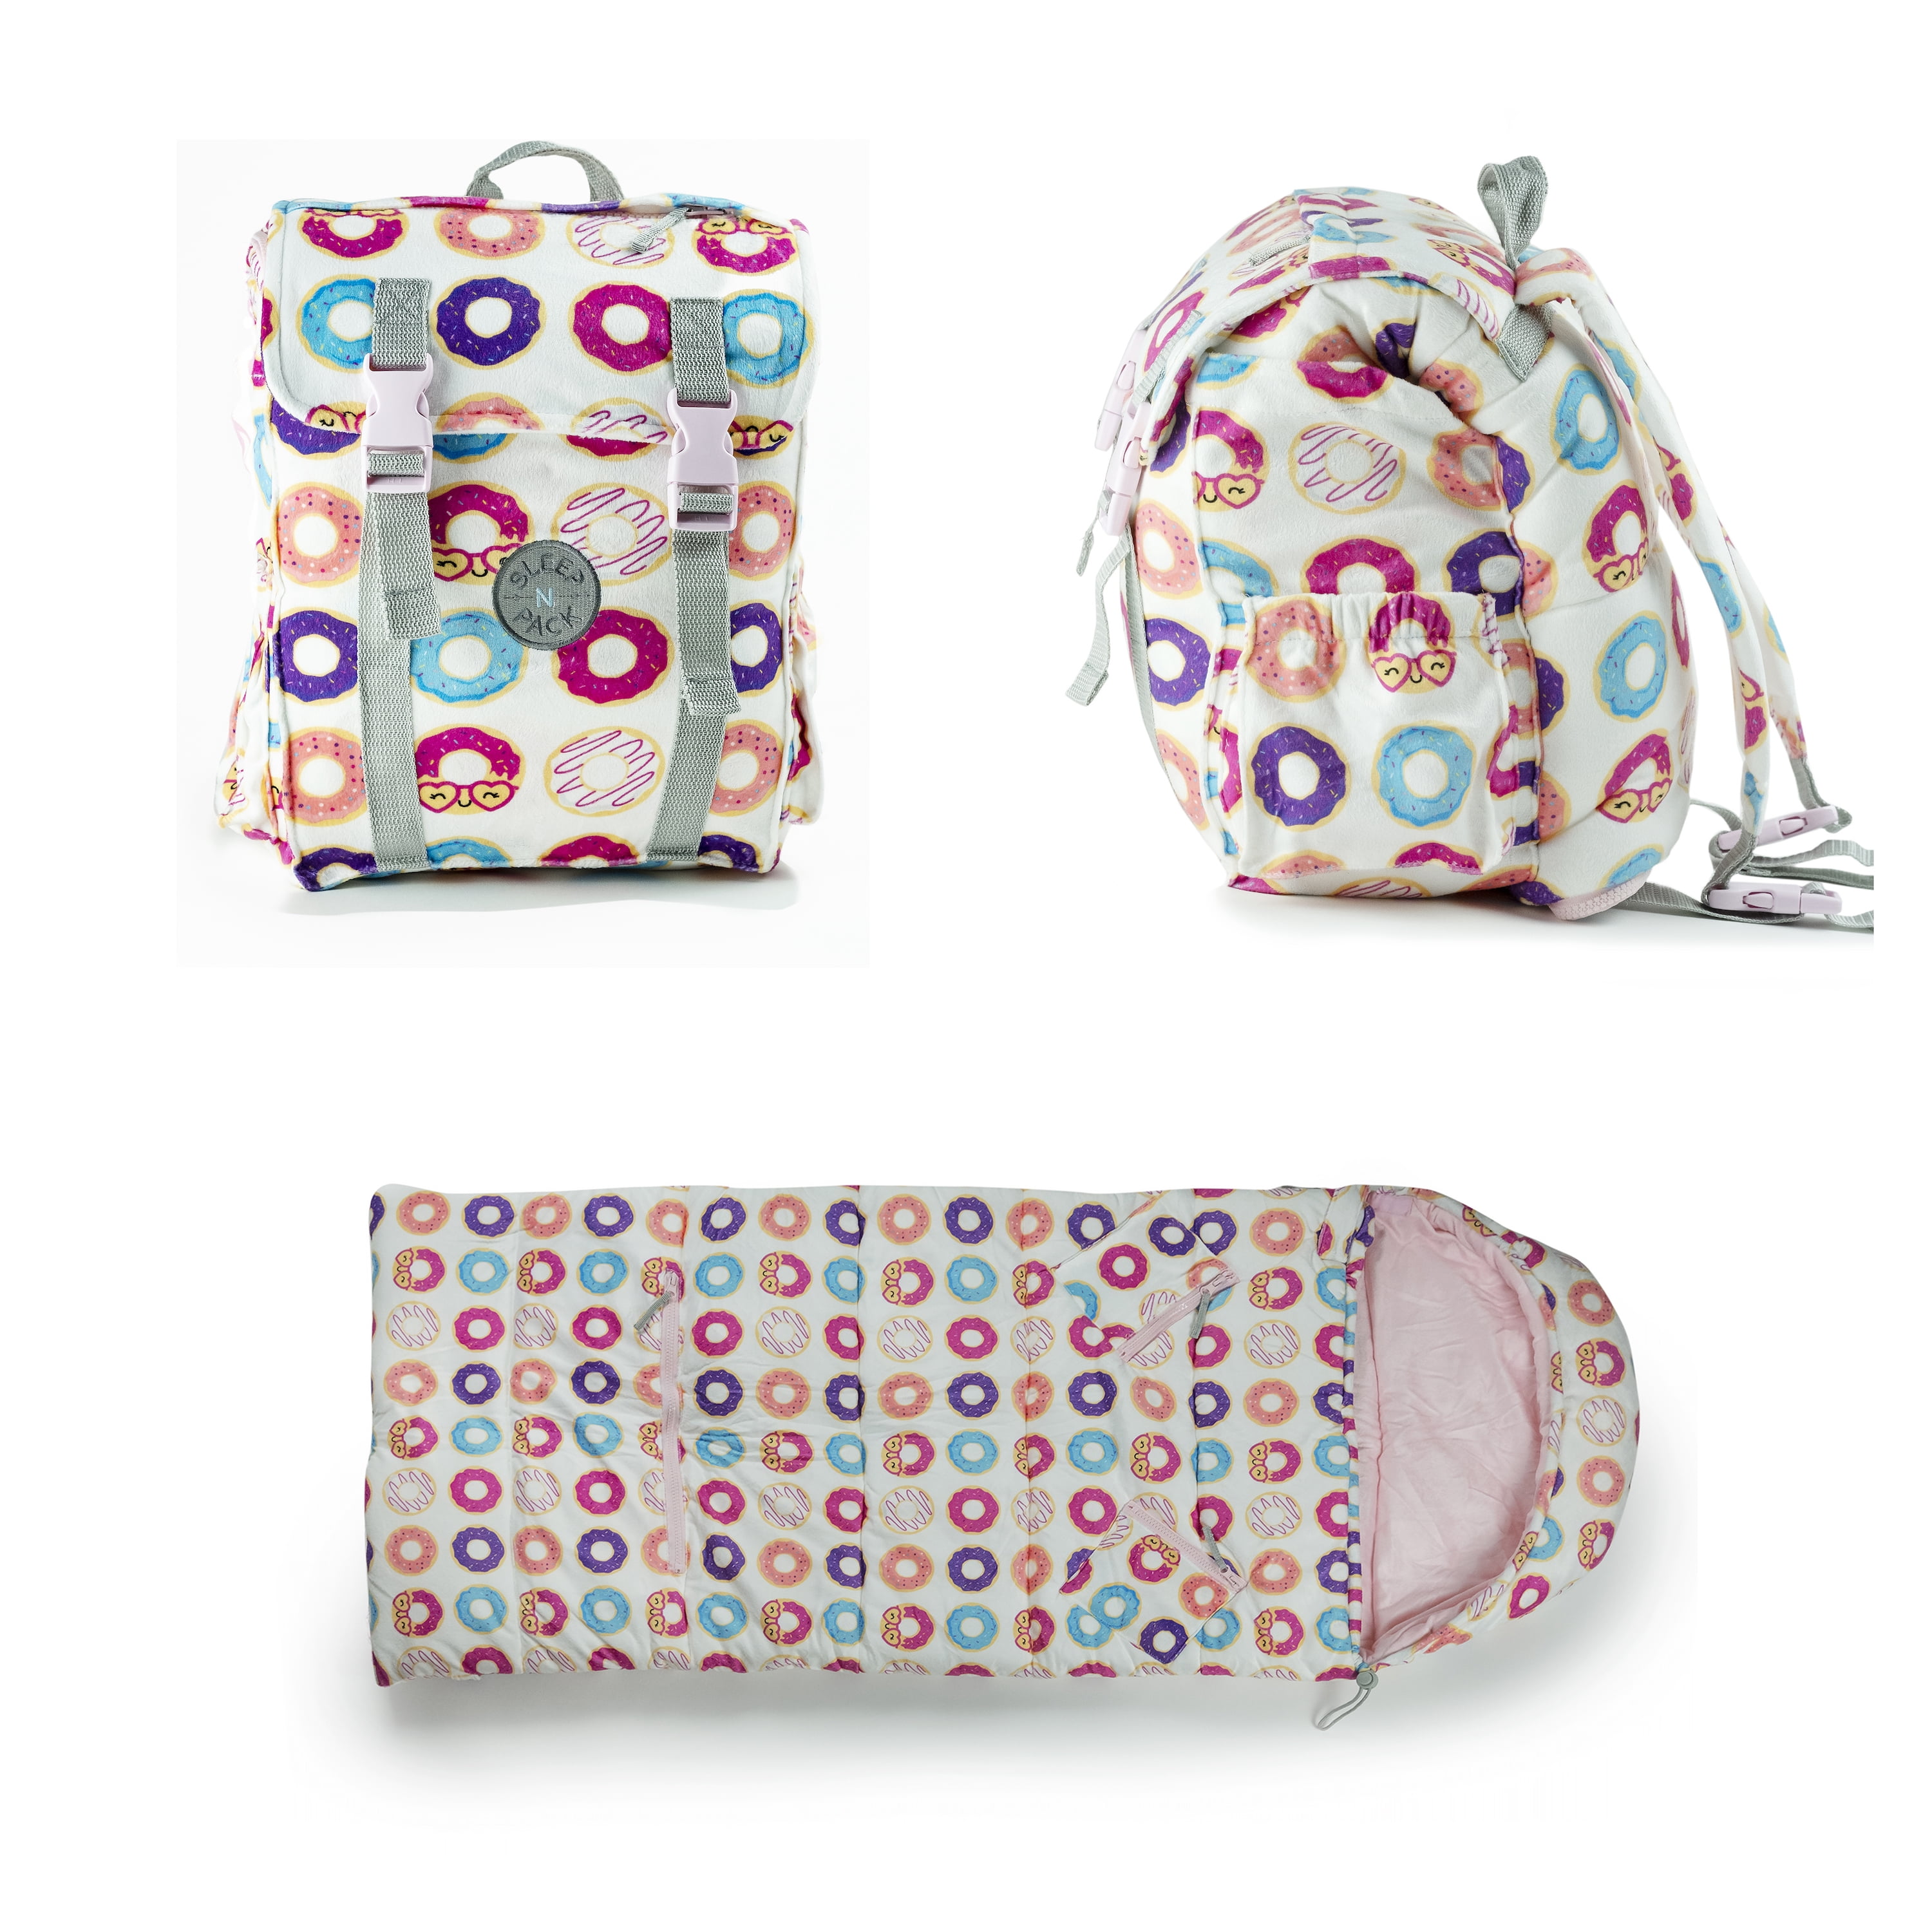 Mimish Sleep-N-Pack, 50 F Packable Kid's Bag & Backpack, Donuts Print - Walmart.com